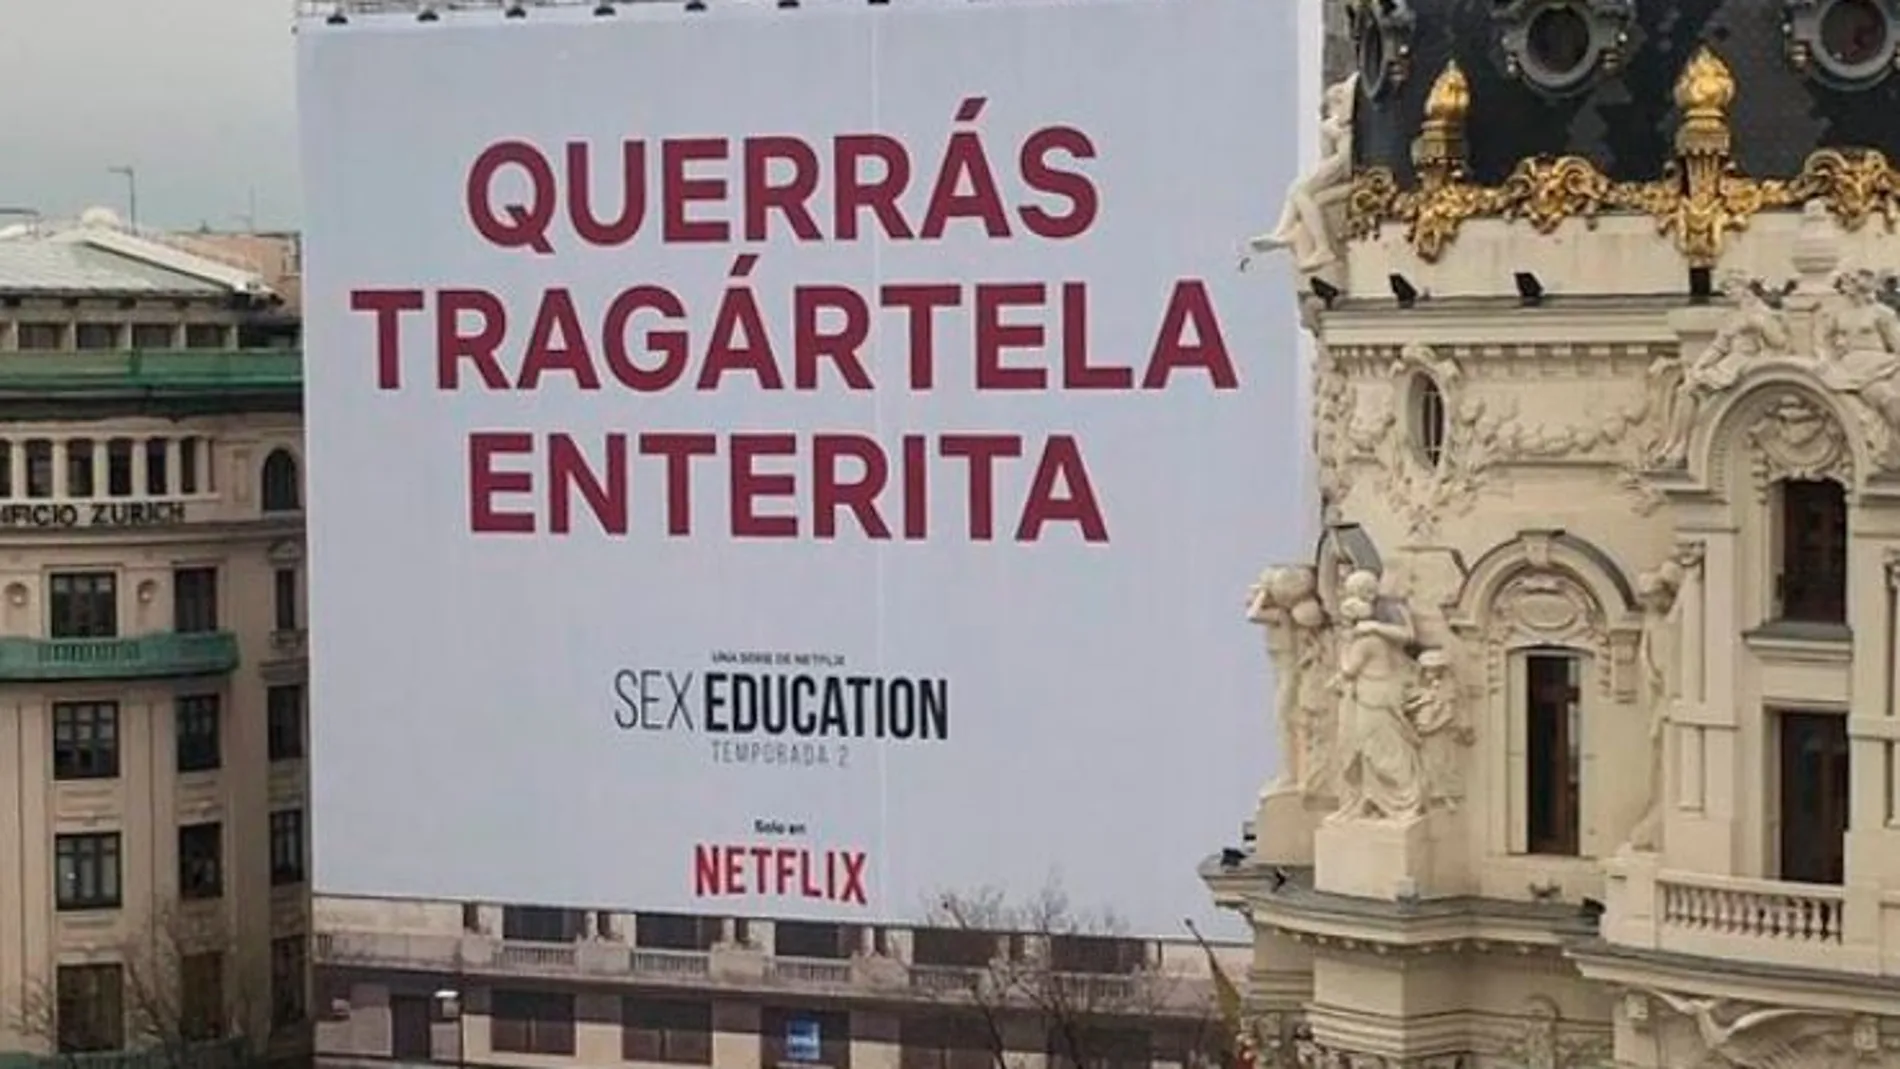 La polémica publicidad de Netflix de la que todo el mundo habla